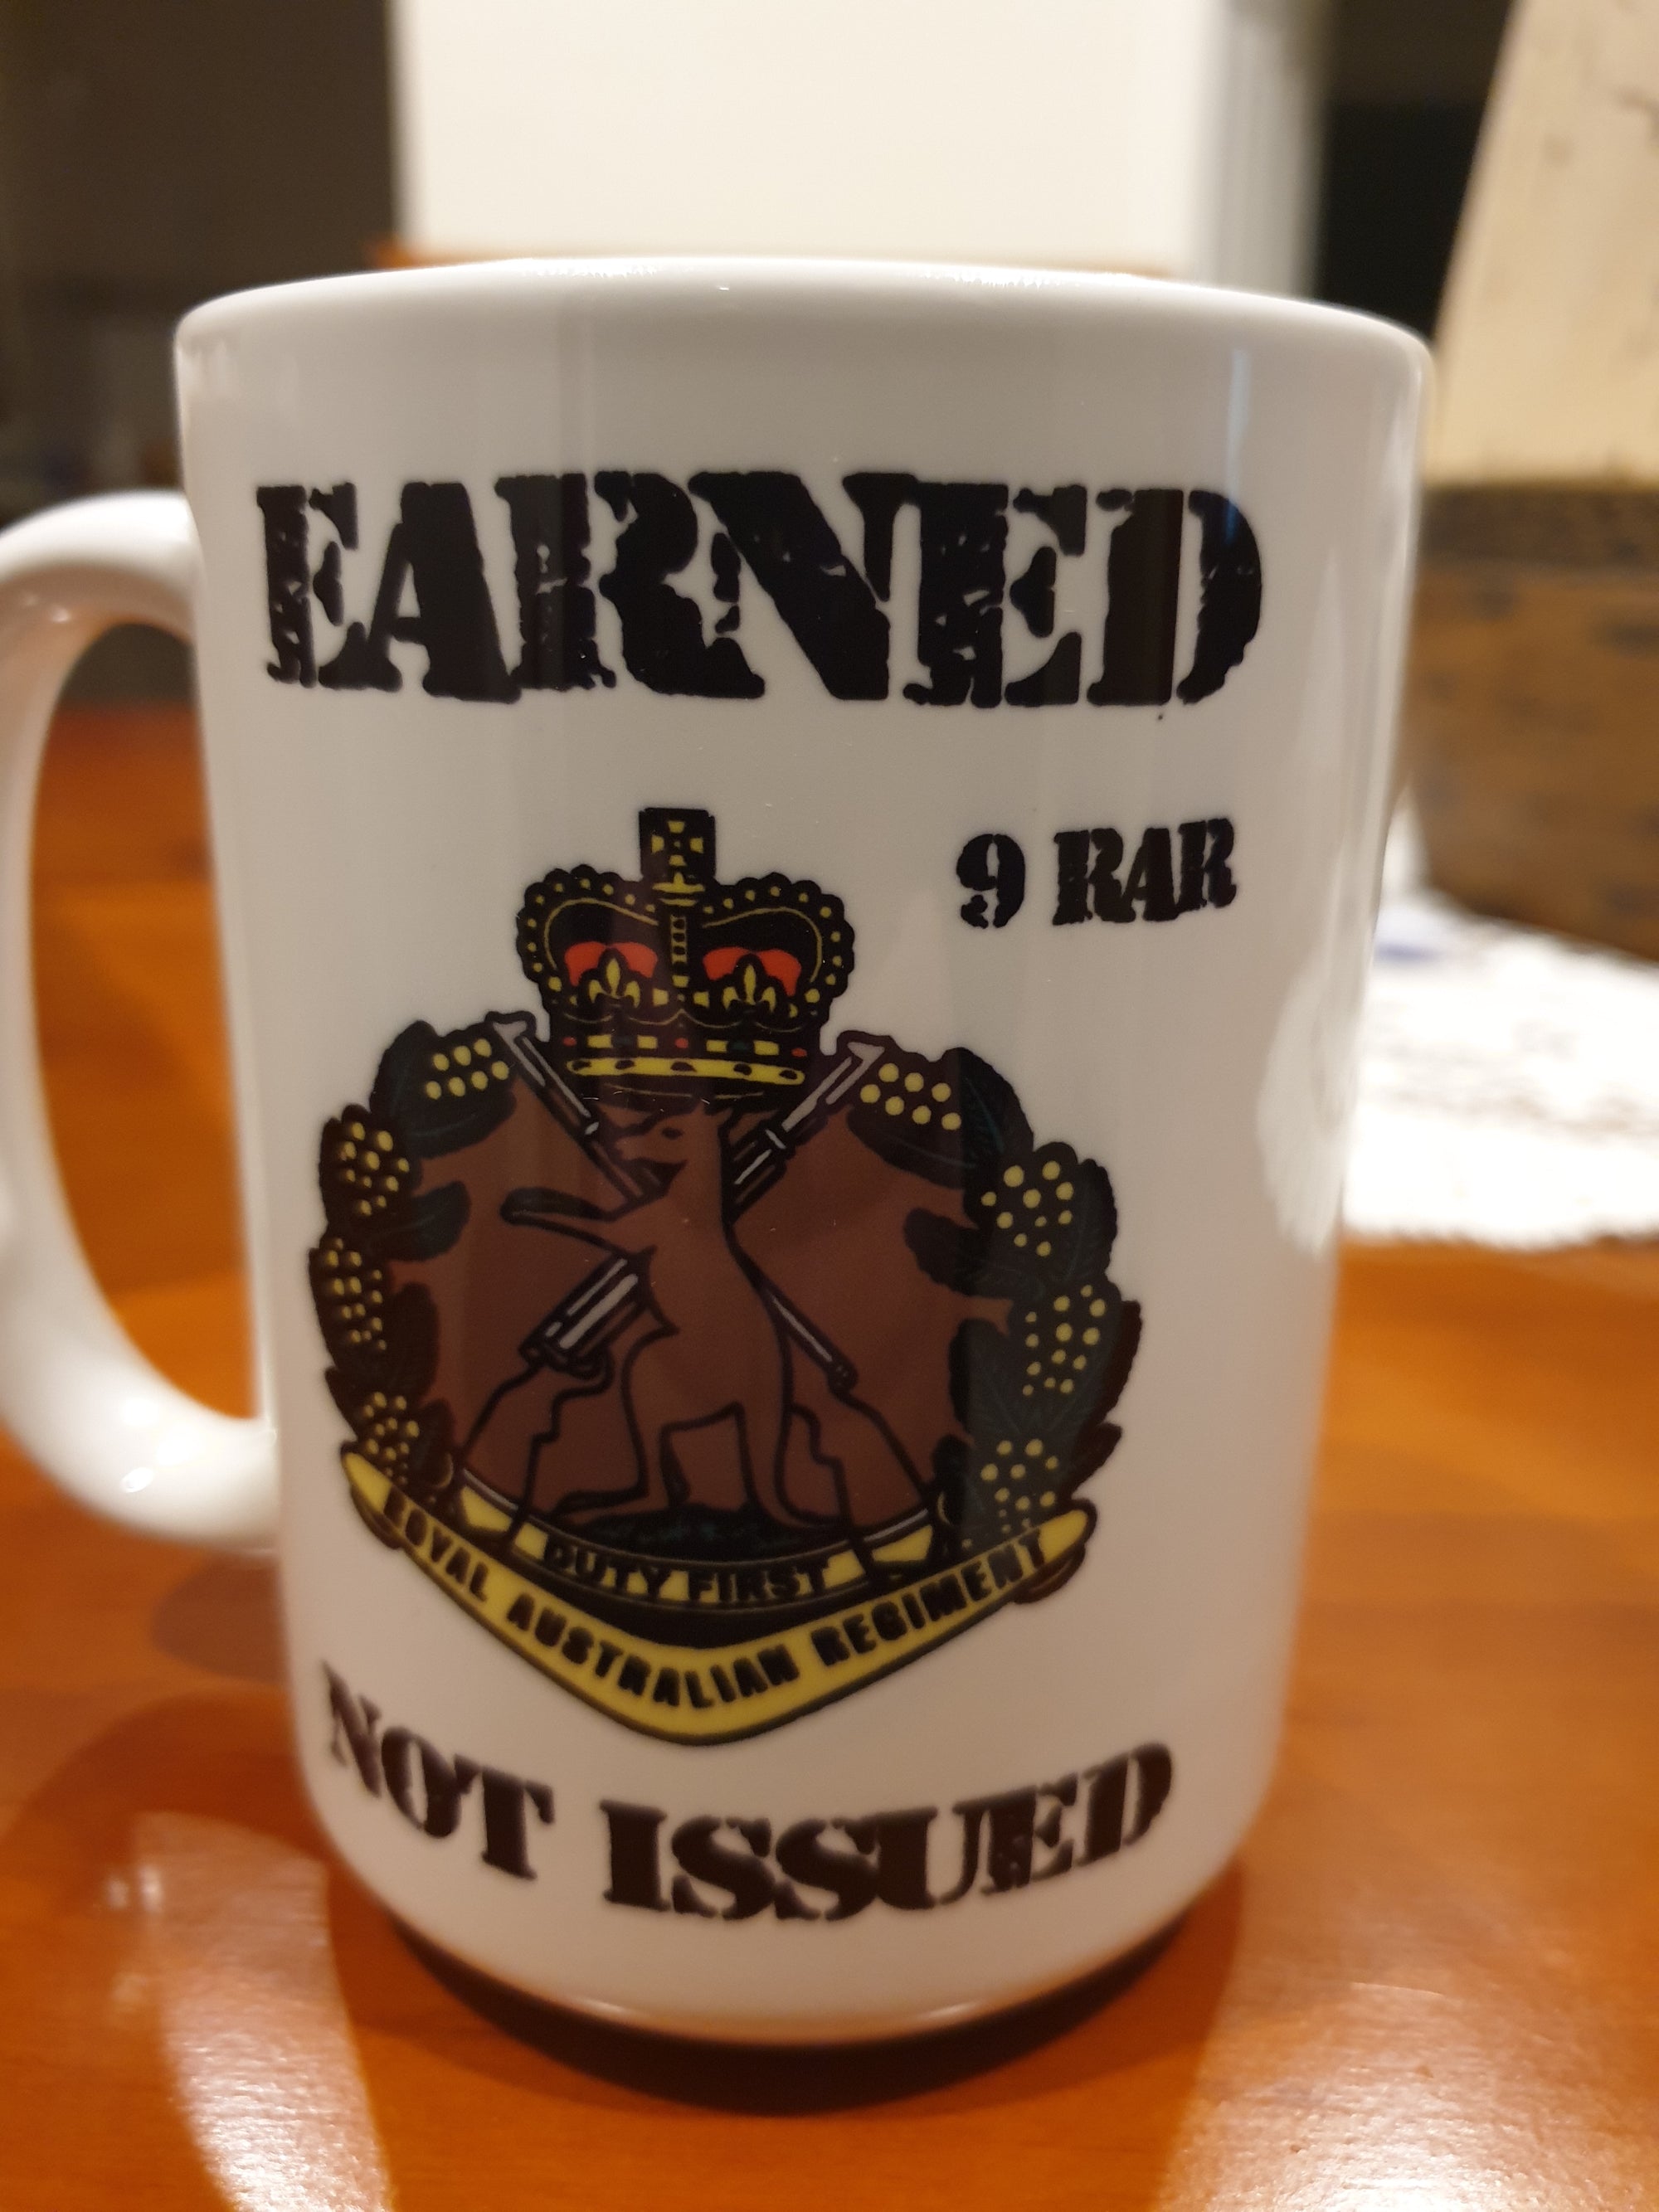 15 OZ  9 RAR Earned not issued   Mugs